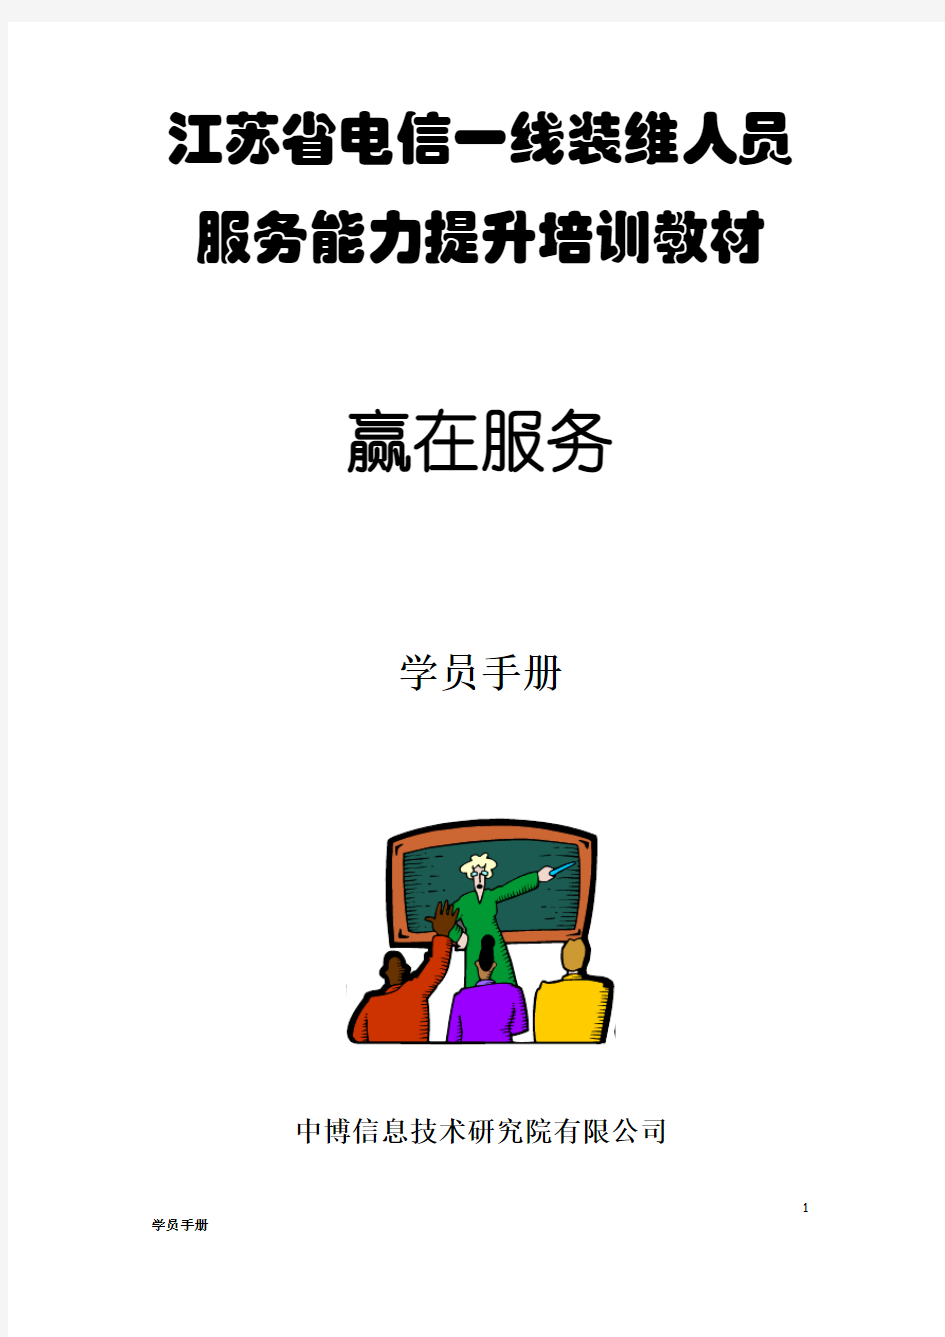 1-江苏省电信一线装维人员服务能力提升培训教材(学员手册)